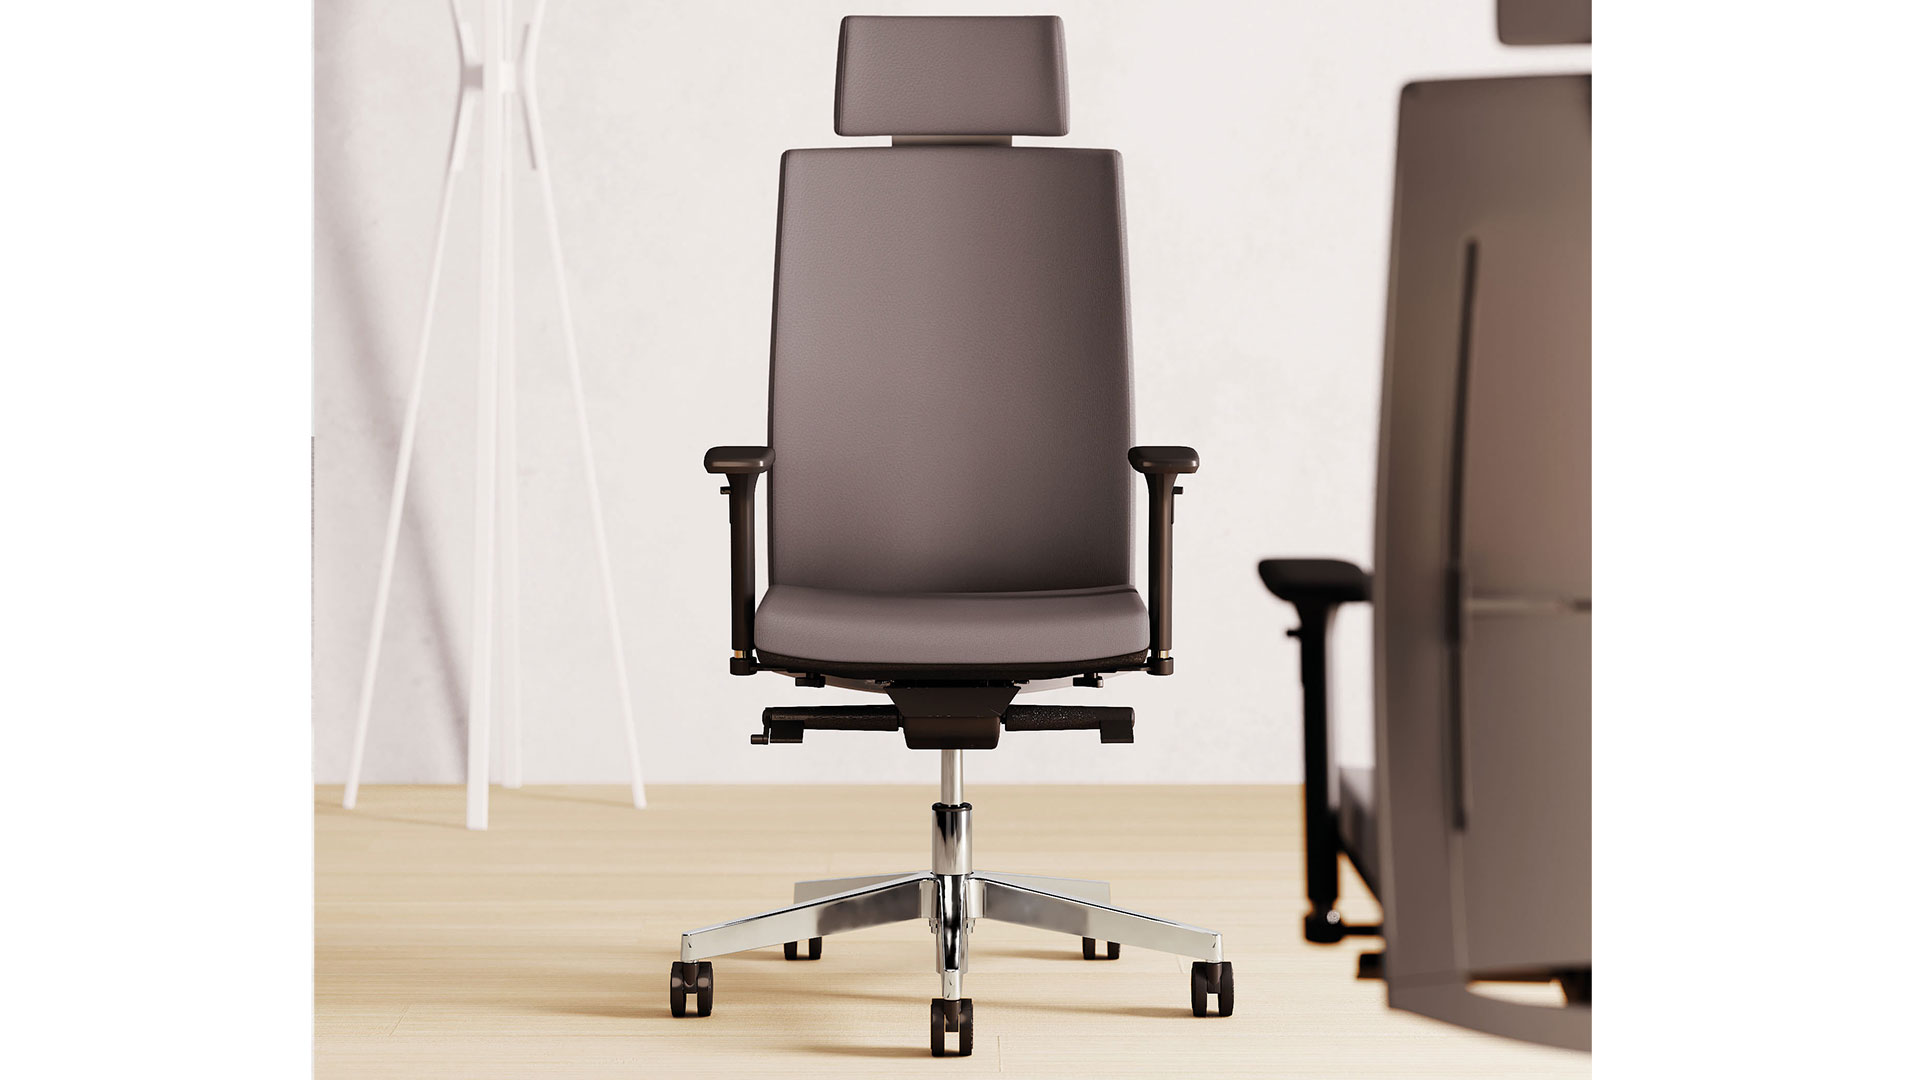 Кресло с высокой спинкой можно дополнить подголовником, Т-образными подлокотниками и одним из 2-х вариантов механизмов газлифт